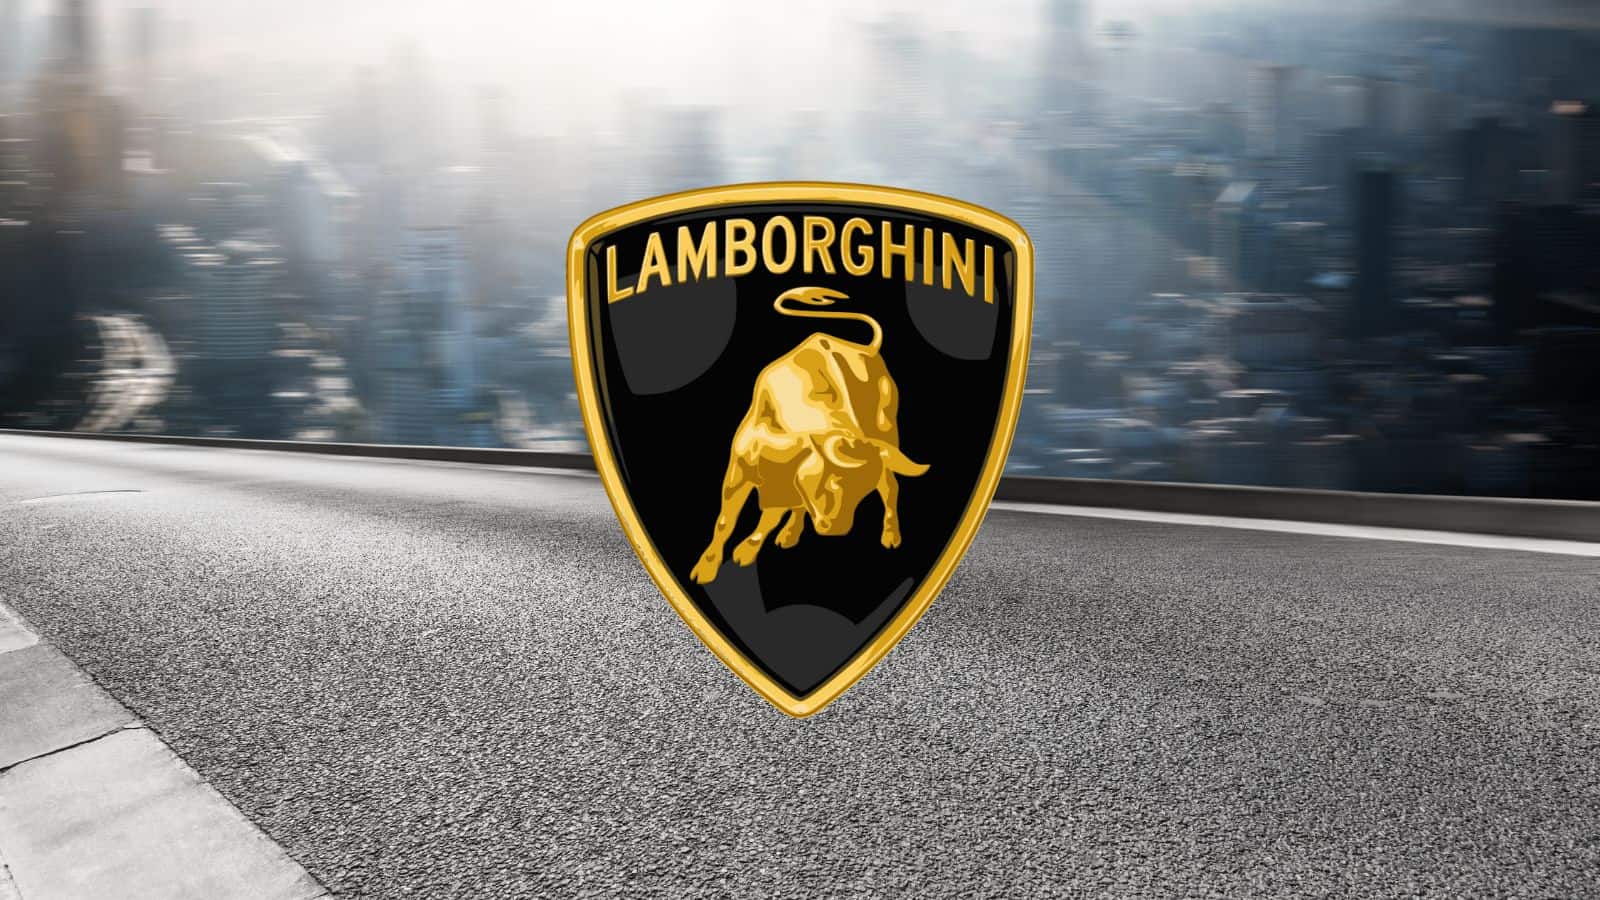 Lamborghini ha problemi con il cofano: si apre troppo velocemente